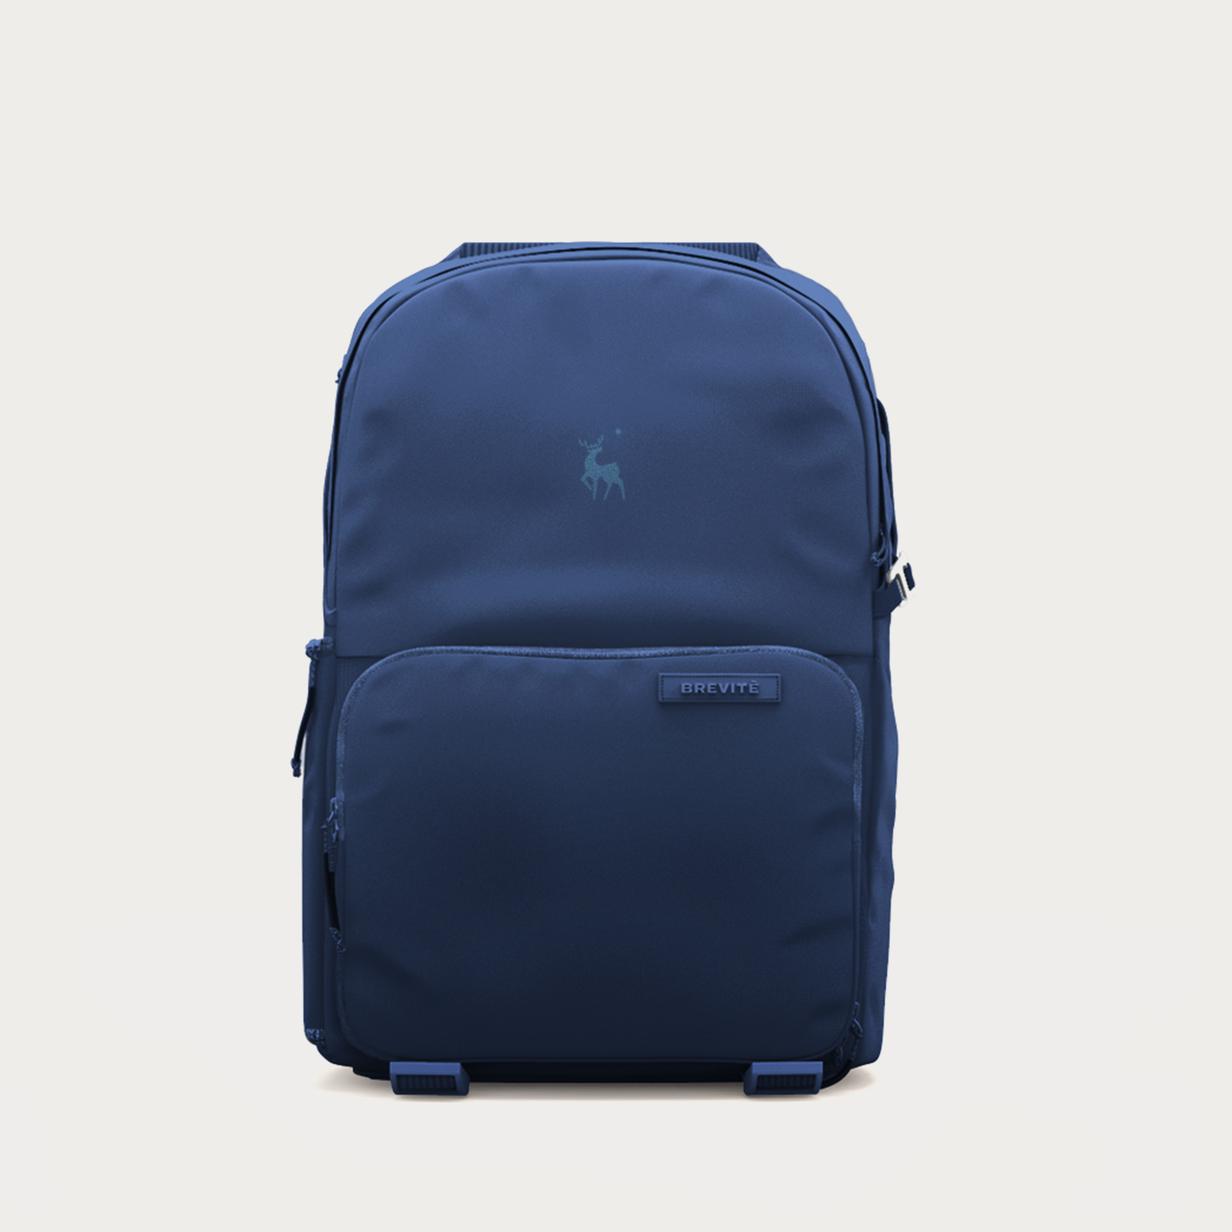 Moment Brevite JPR NVY 001 Jumper Backpack Moonlit Blue 01